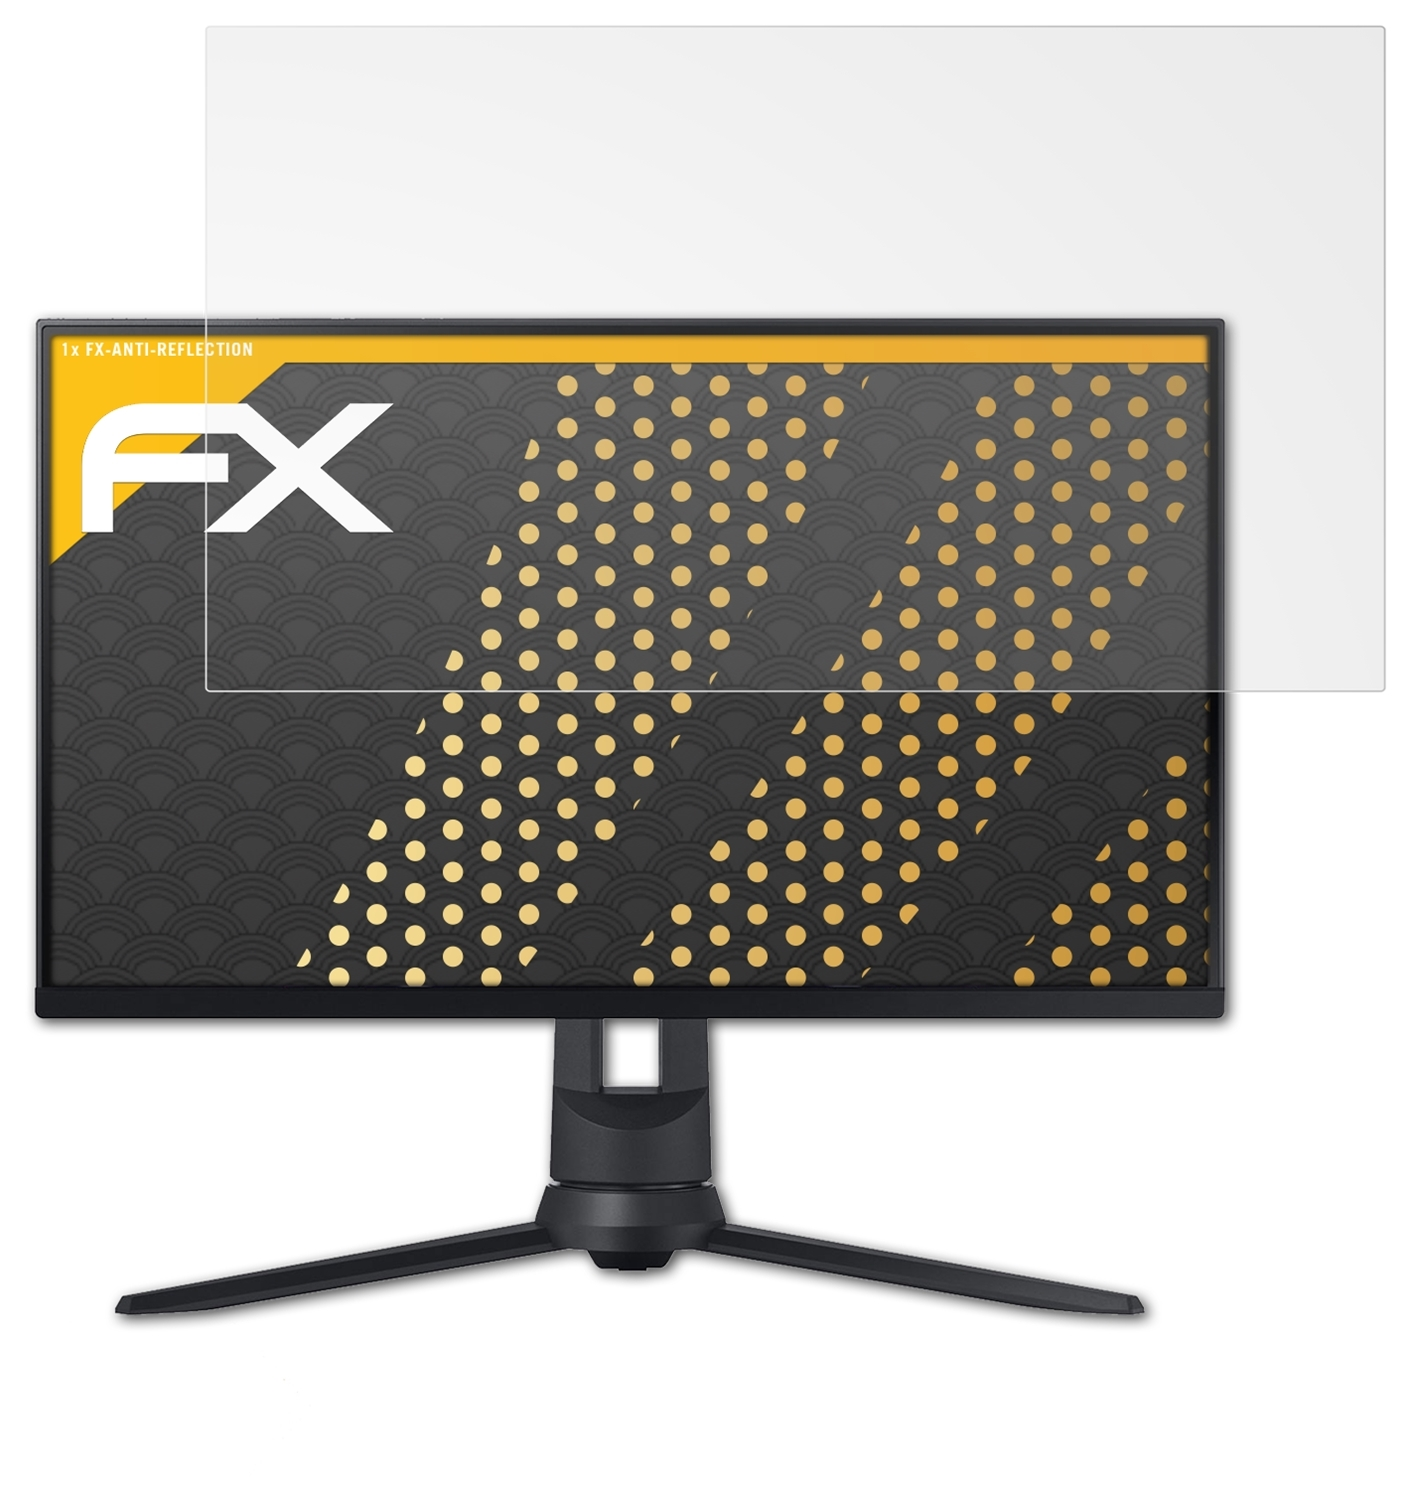 ATFOLIX FX-Antireflex Displayschutz(für Samsung Odyssey G3)